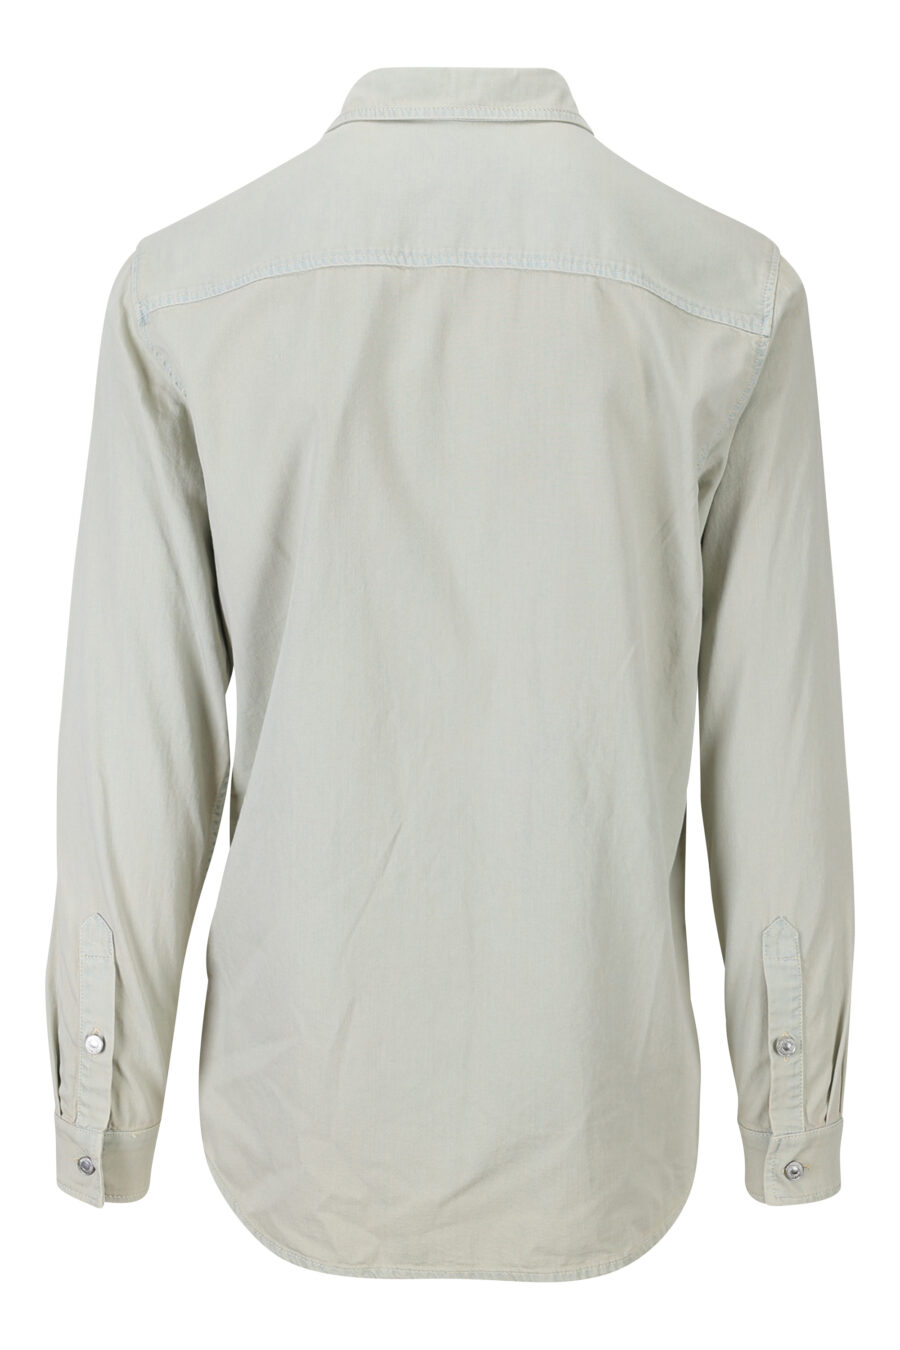 Camisa vaquera gris desteñida con logo oso - 889316852417 1